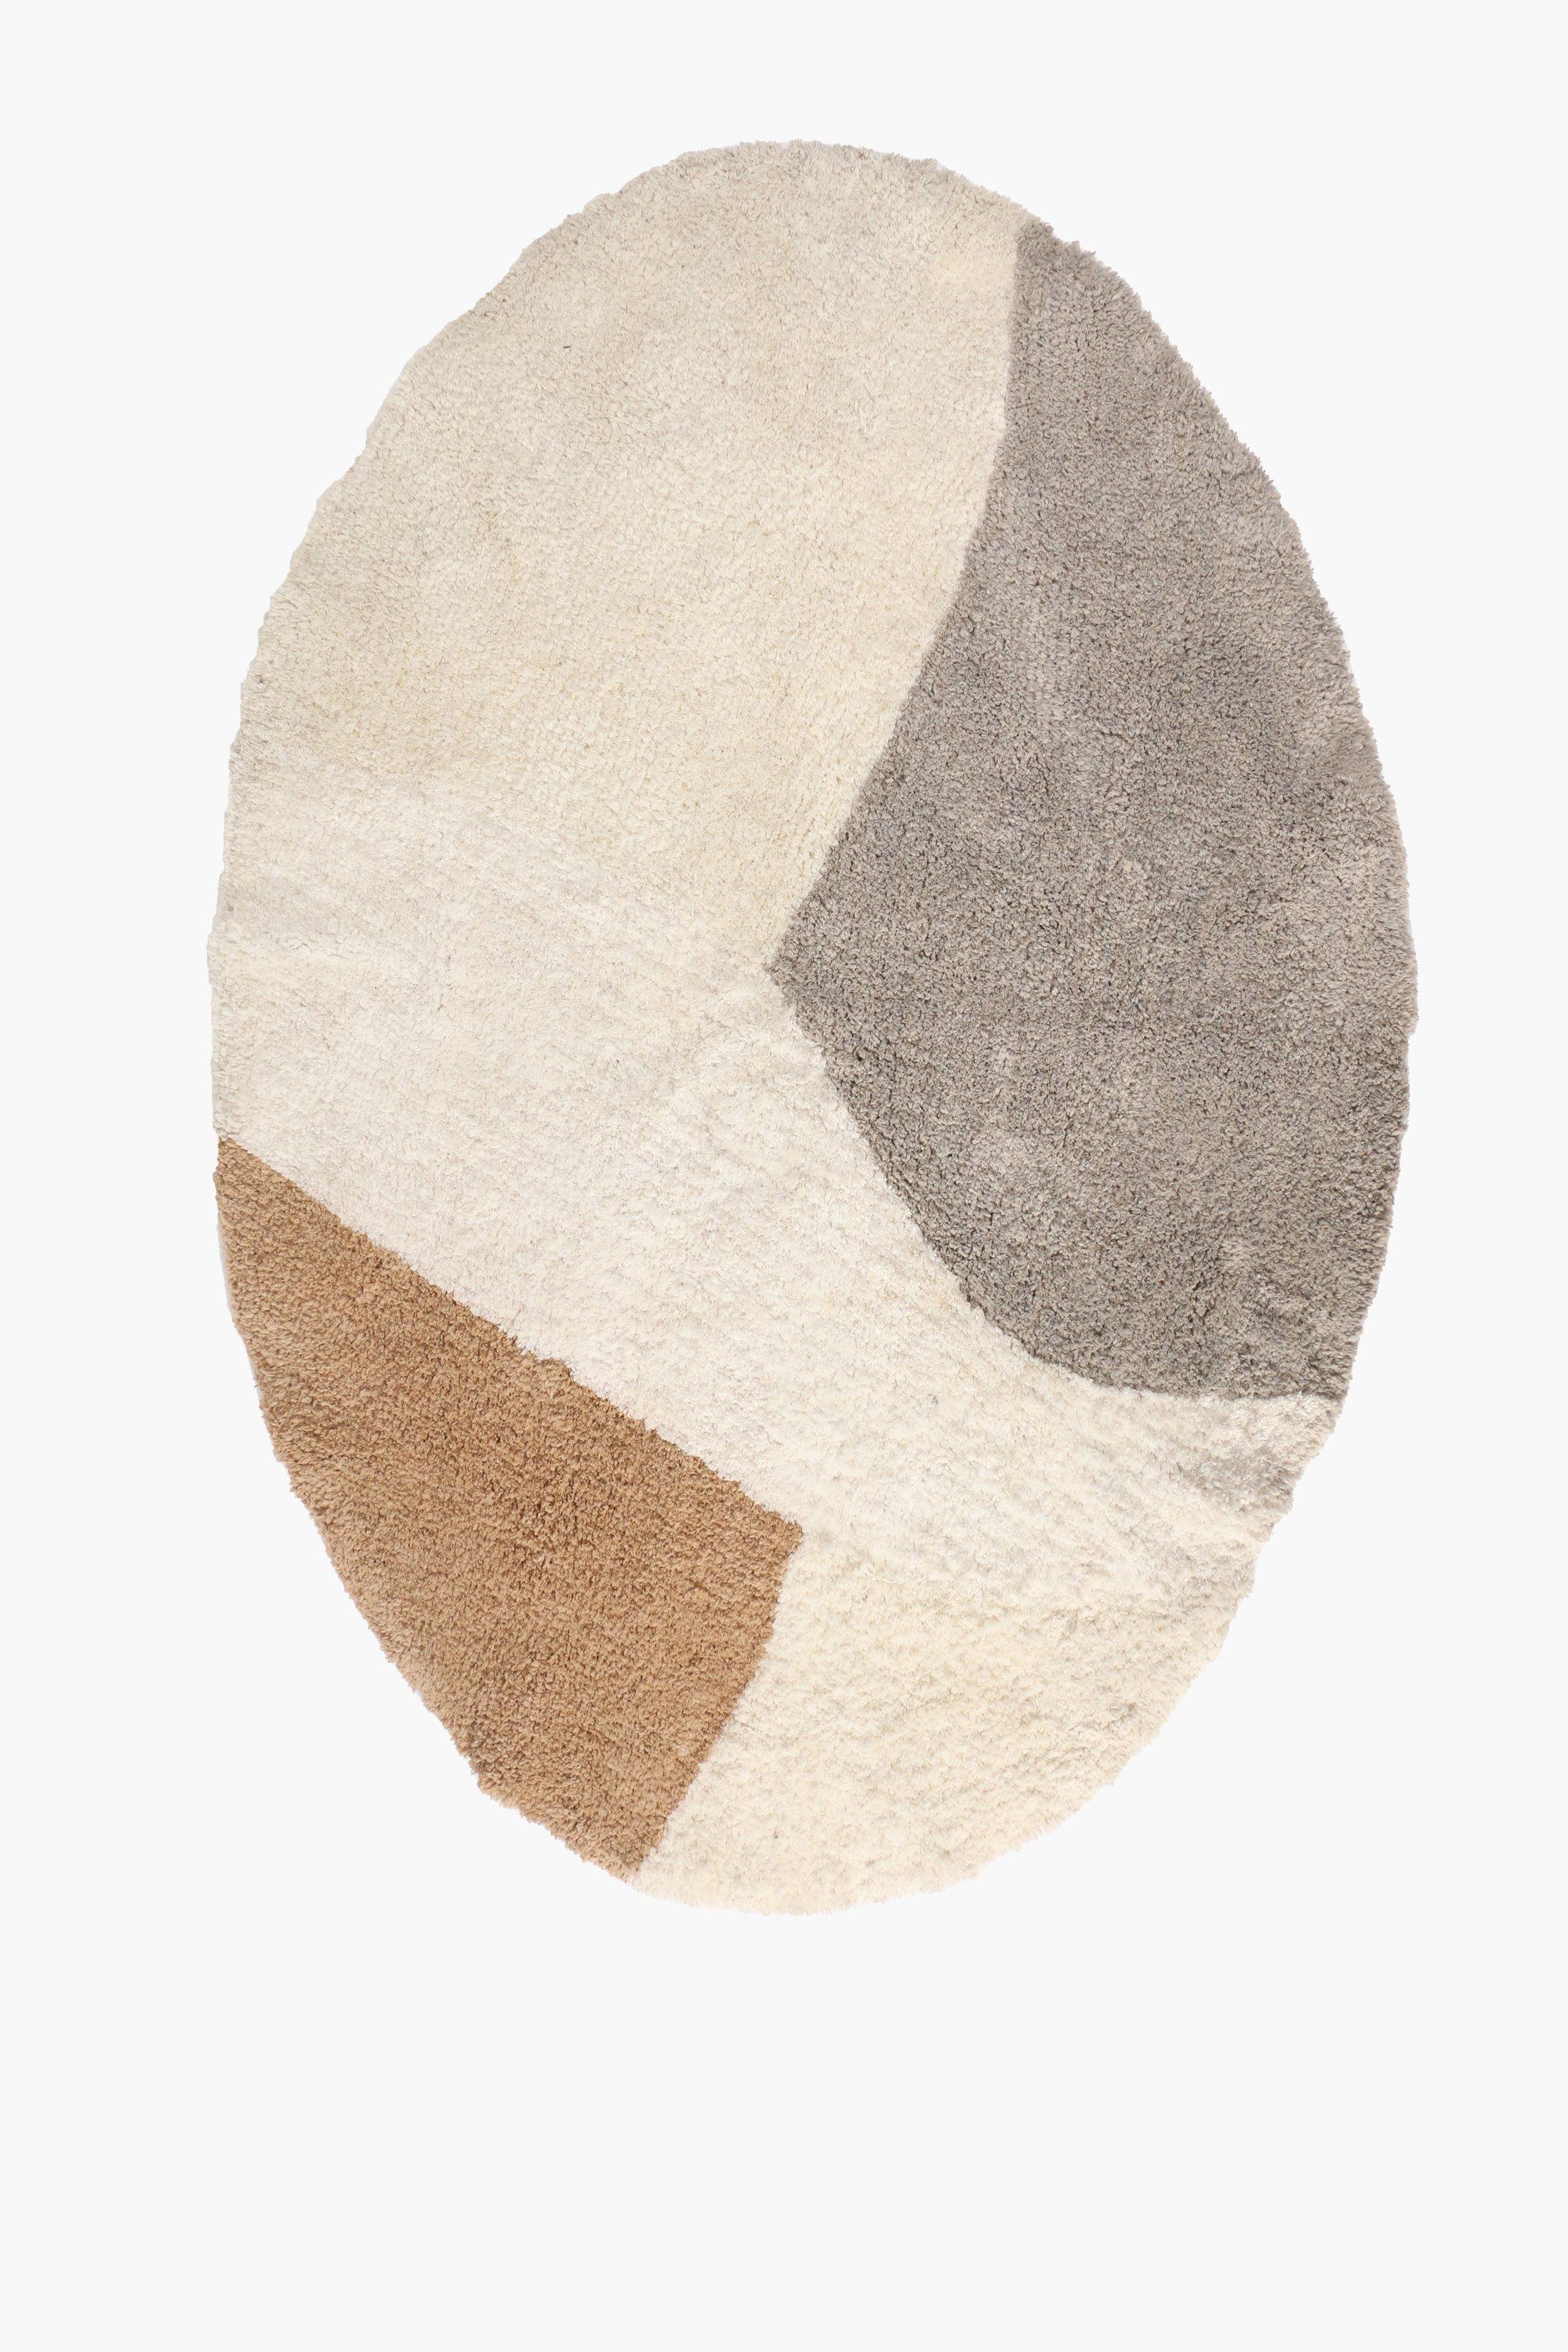 Plain oval wool rug 120 x 180 cm, Simons Maison